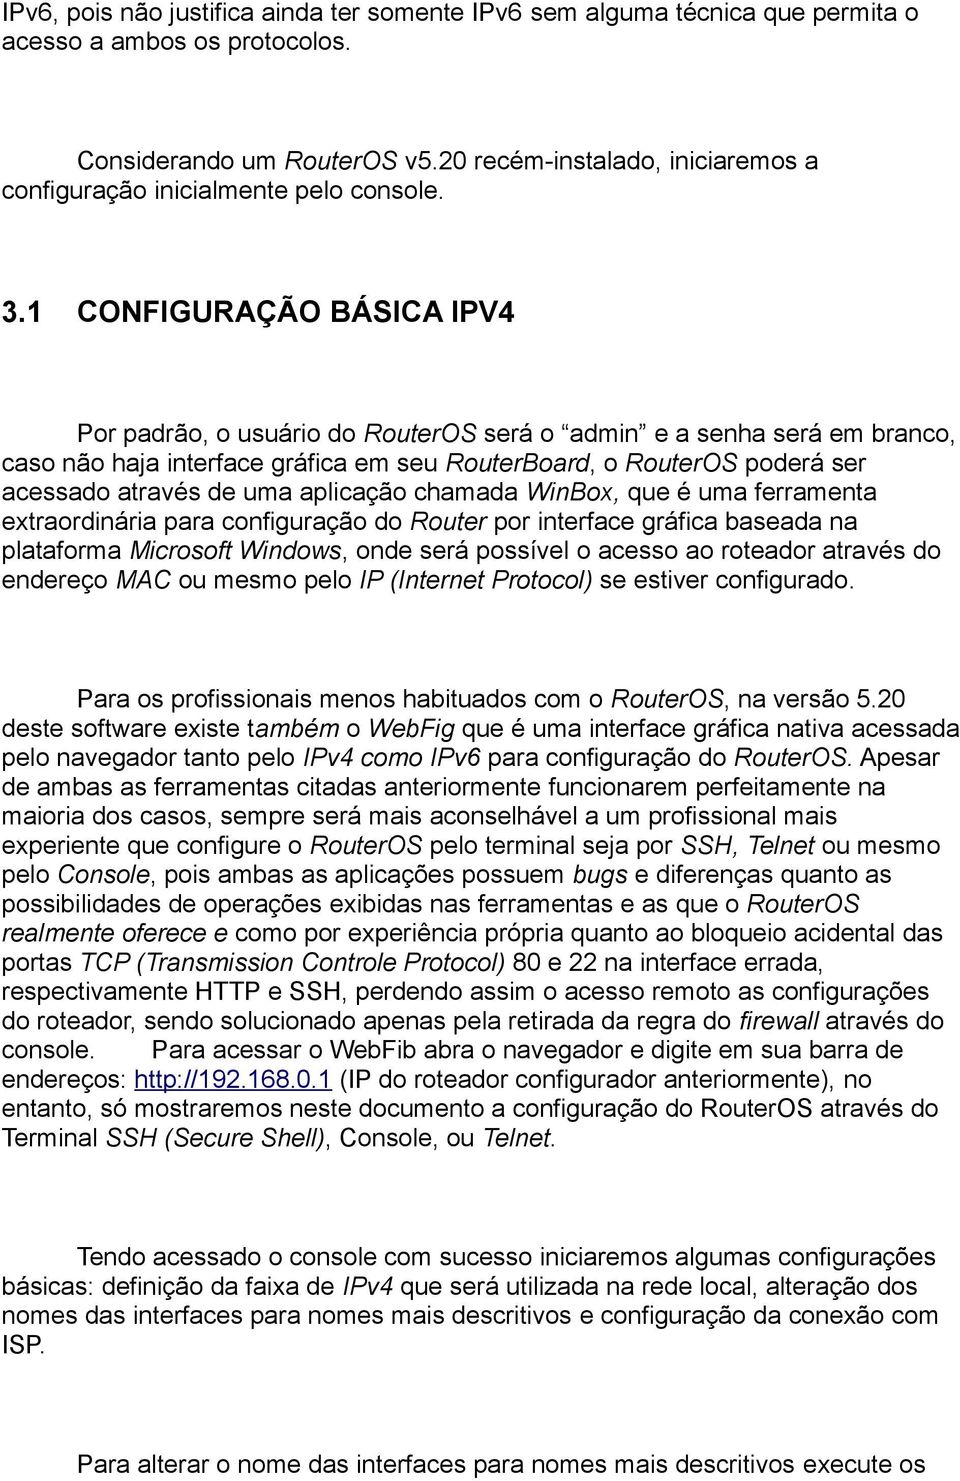 1 CONFIGURAÇÃO BÁSICA IPV4 Por padrão, o usuário do RouterOS será o admin e a senha será em branco, caso não haja interface gráfica em seu RouterBoard, o RouterOS poderá ser acessado através de uma